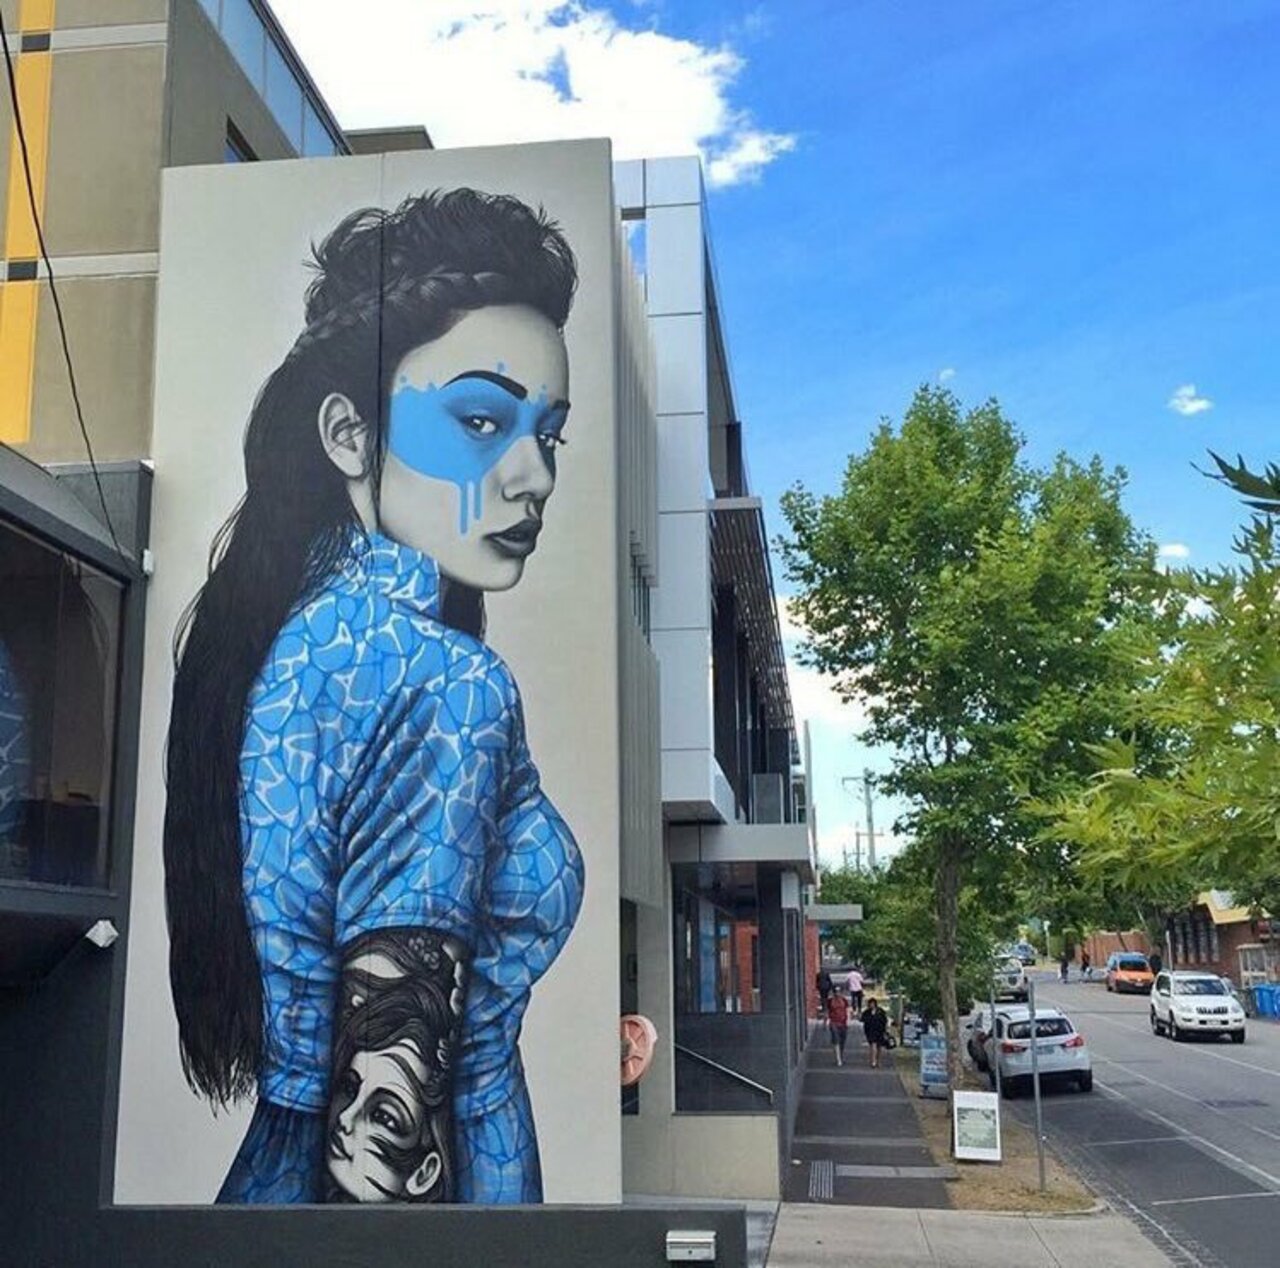 #mural by Findac #Melbourne #Australia #art #graffiti #streetart #urbanart https://t.co/SKkSI3HeuY